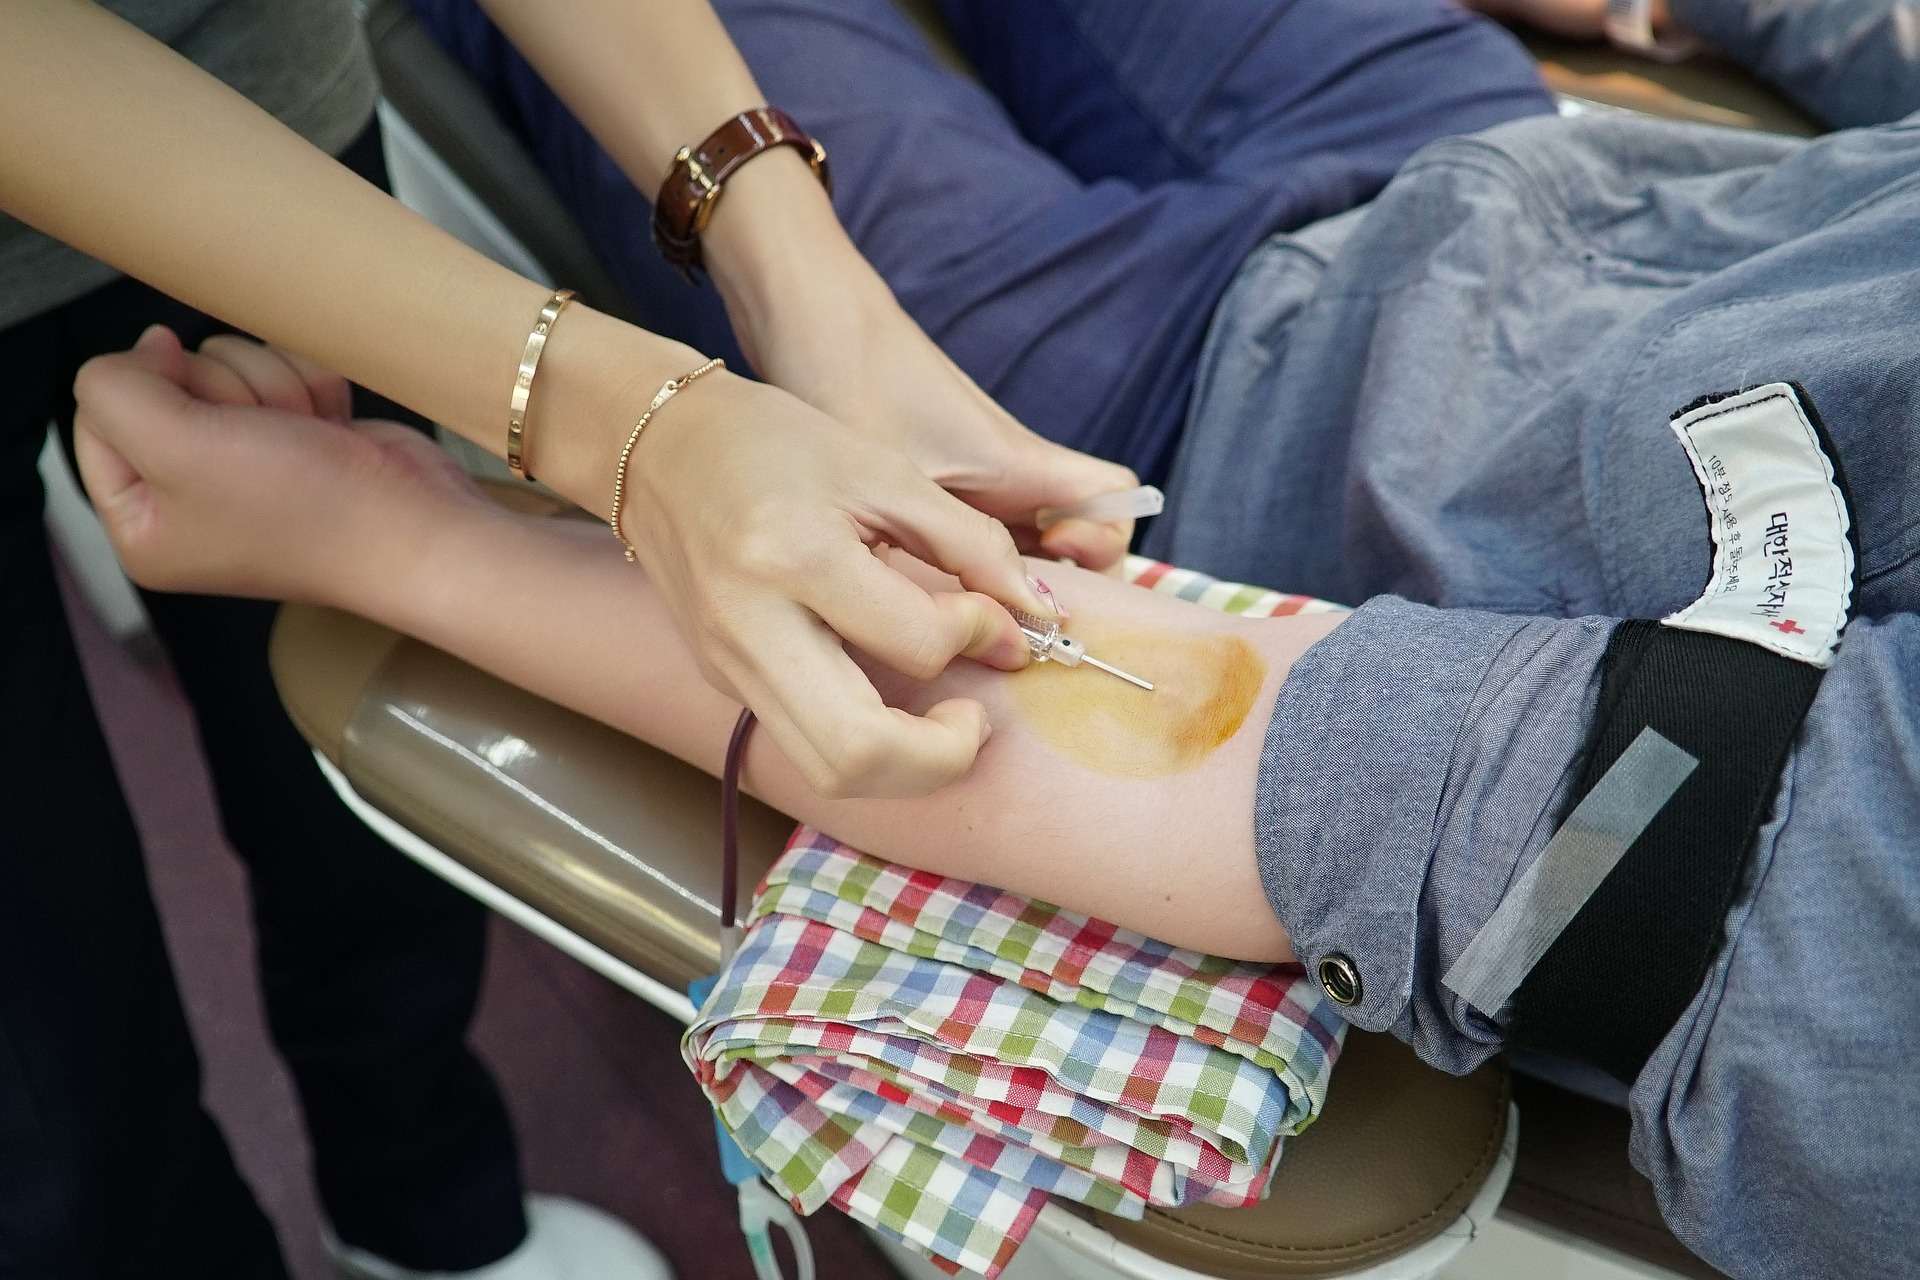 Pixabay Ludzkiej krwi nie da się wyprodukować, a czasem tylko ona może uratować życie